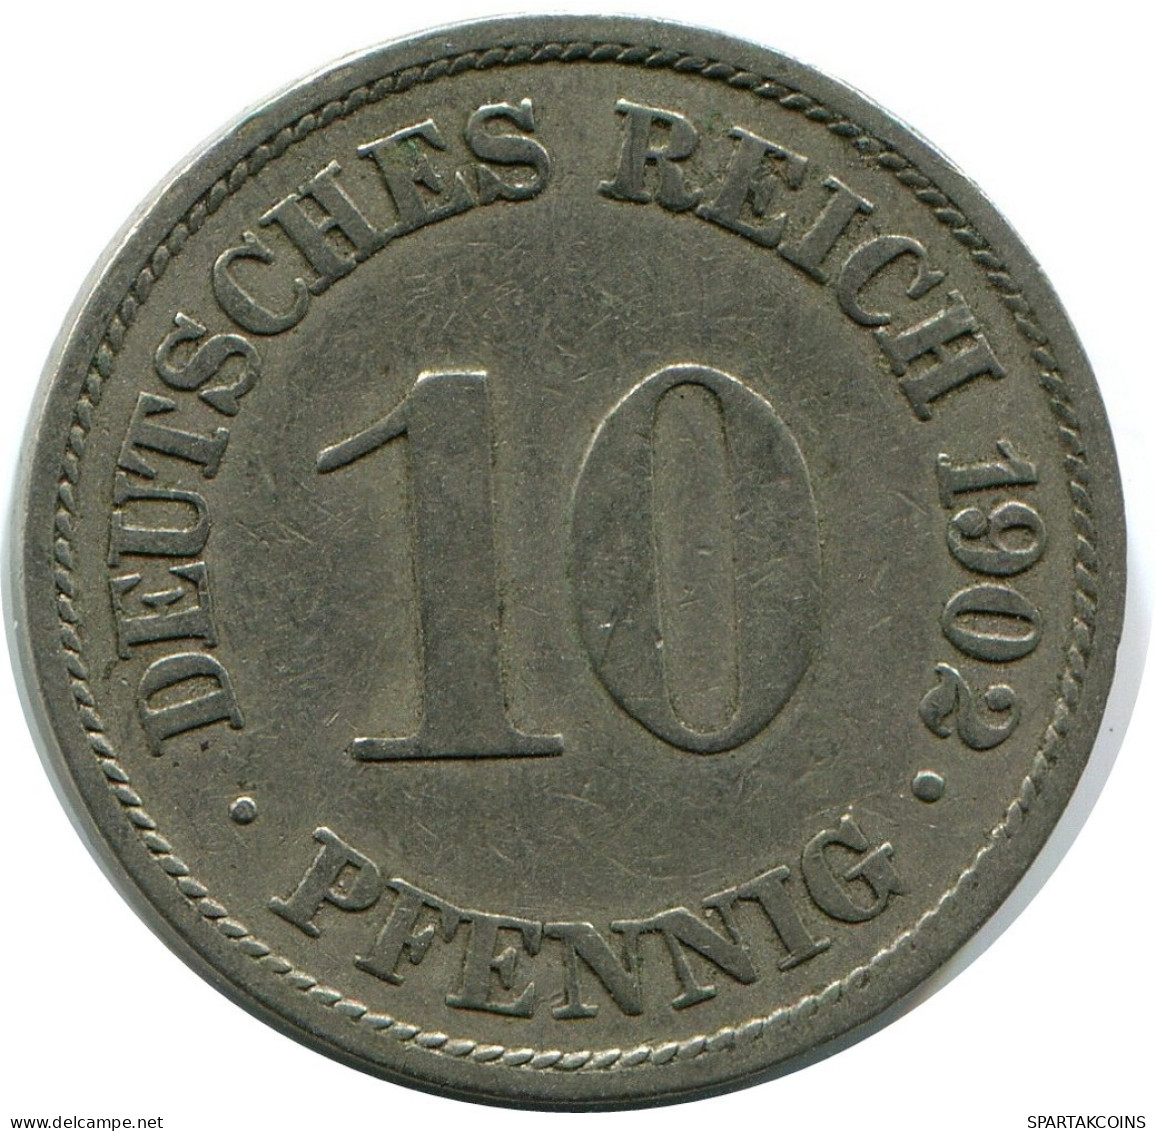 10 PFENNIG 1912 A GERMANY Coin #DB295.U.A - 10 Pfennig